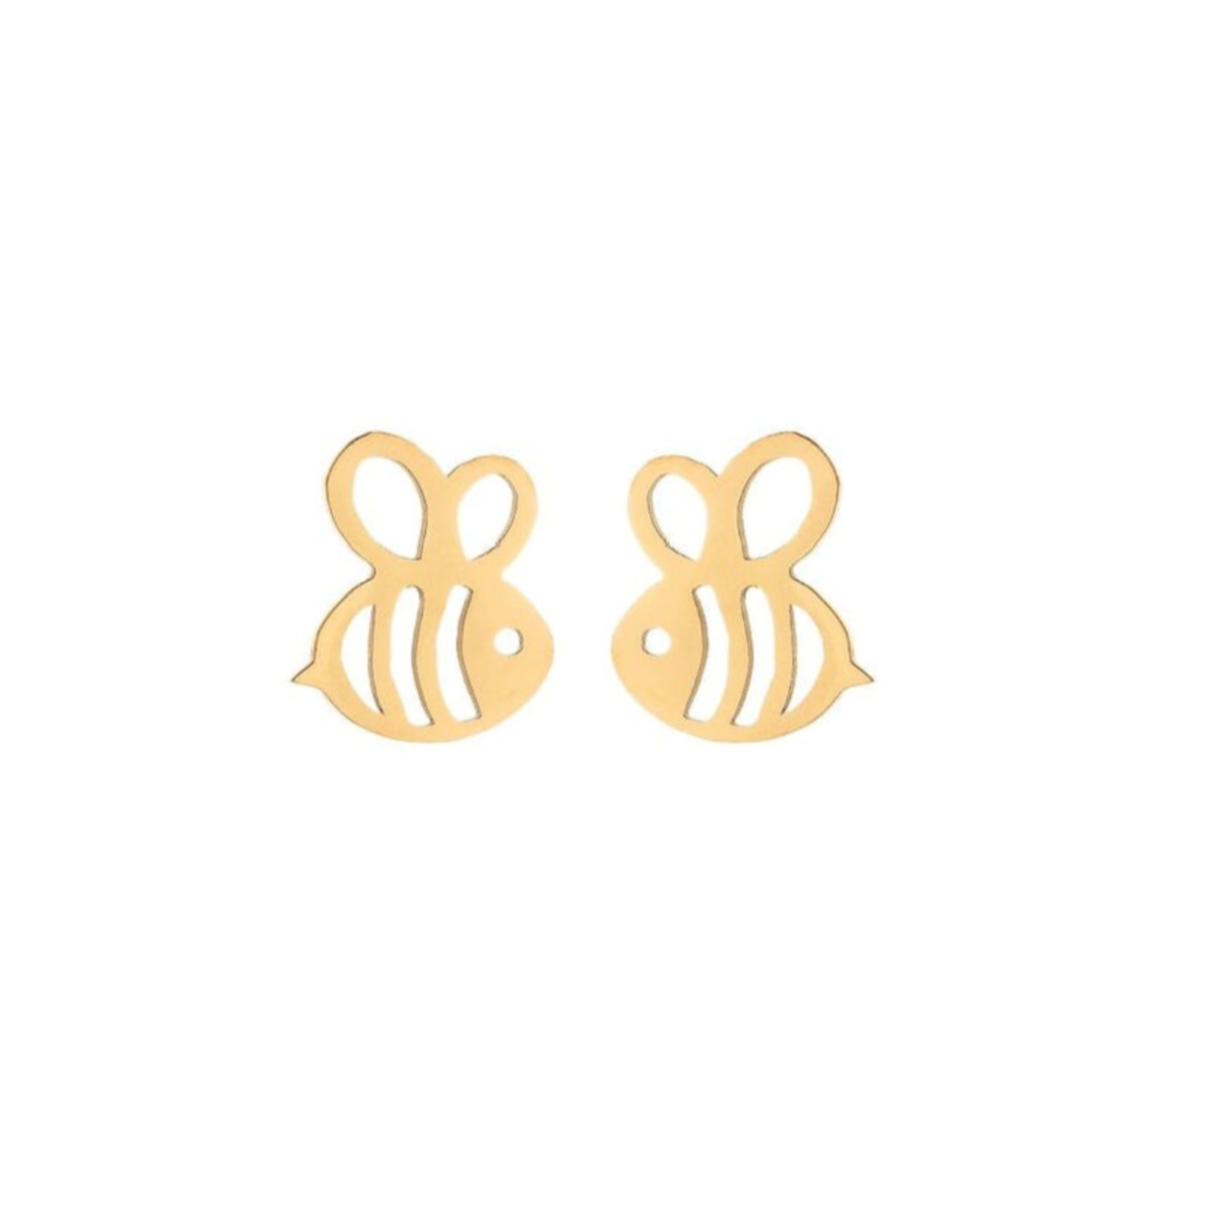 Boucles d'oreilles acier inoxydable doré petites abeilles. Détails produit : Couleur or. Acier inoxydable doré. Petites abeilles dorées. Dimensions 1 cm x 1 cm.  Version couleur argent